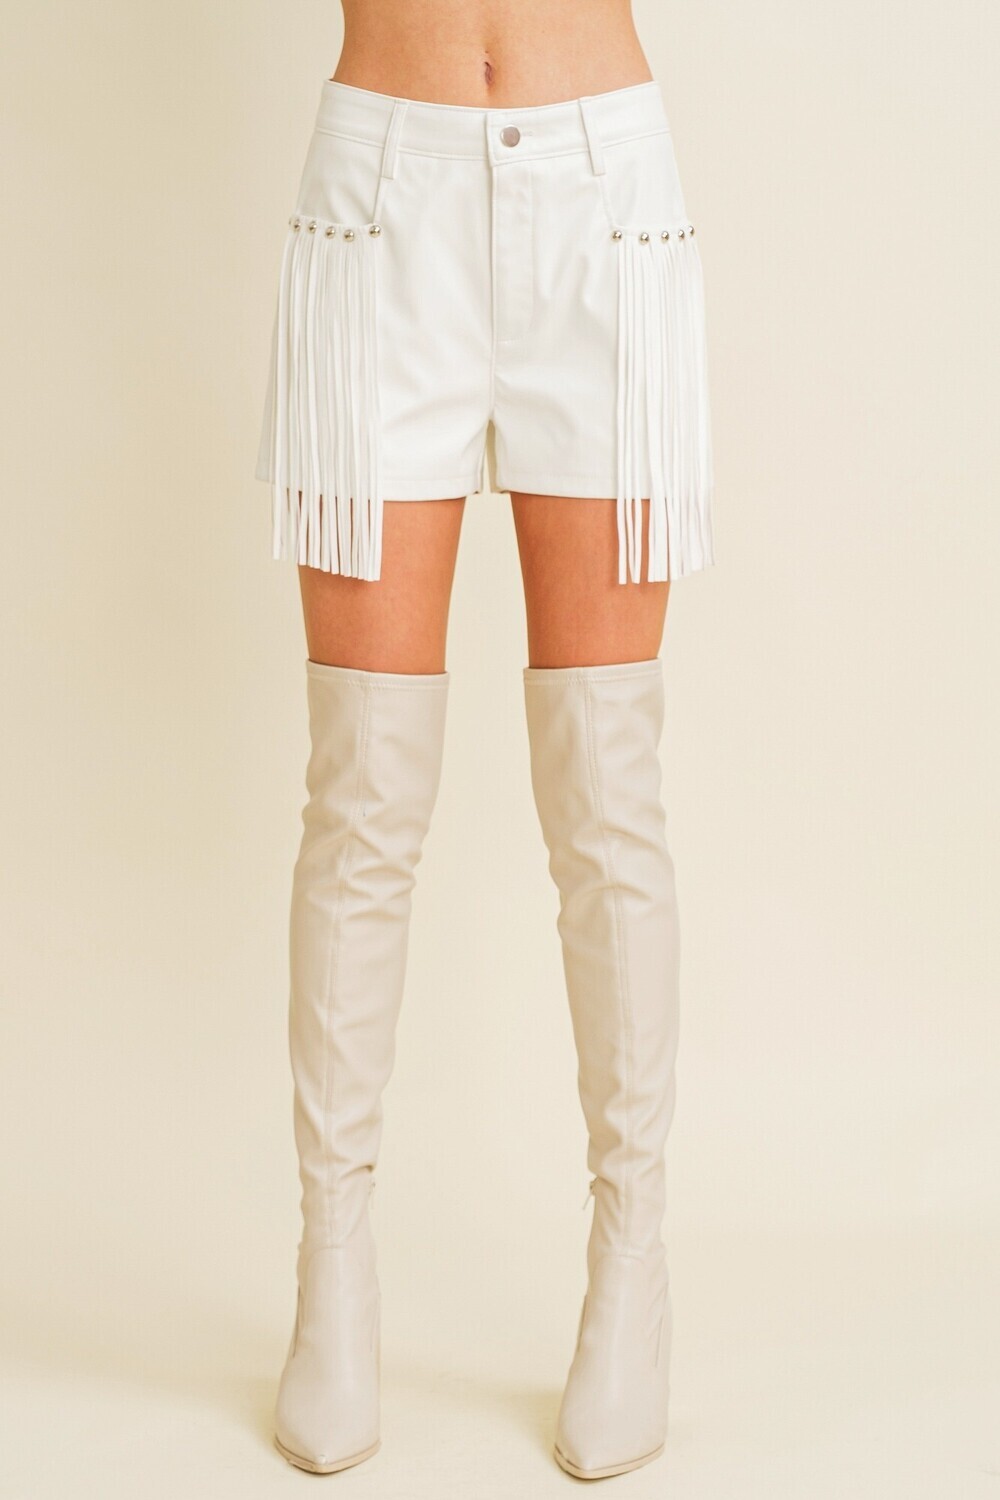 White Fringe and Stud Faux Leather Shorts